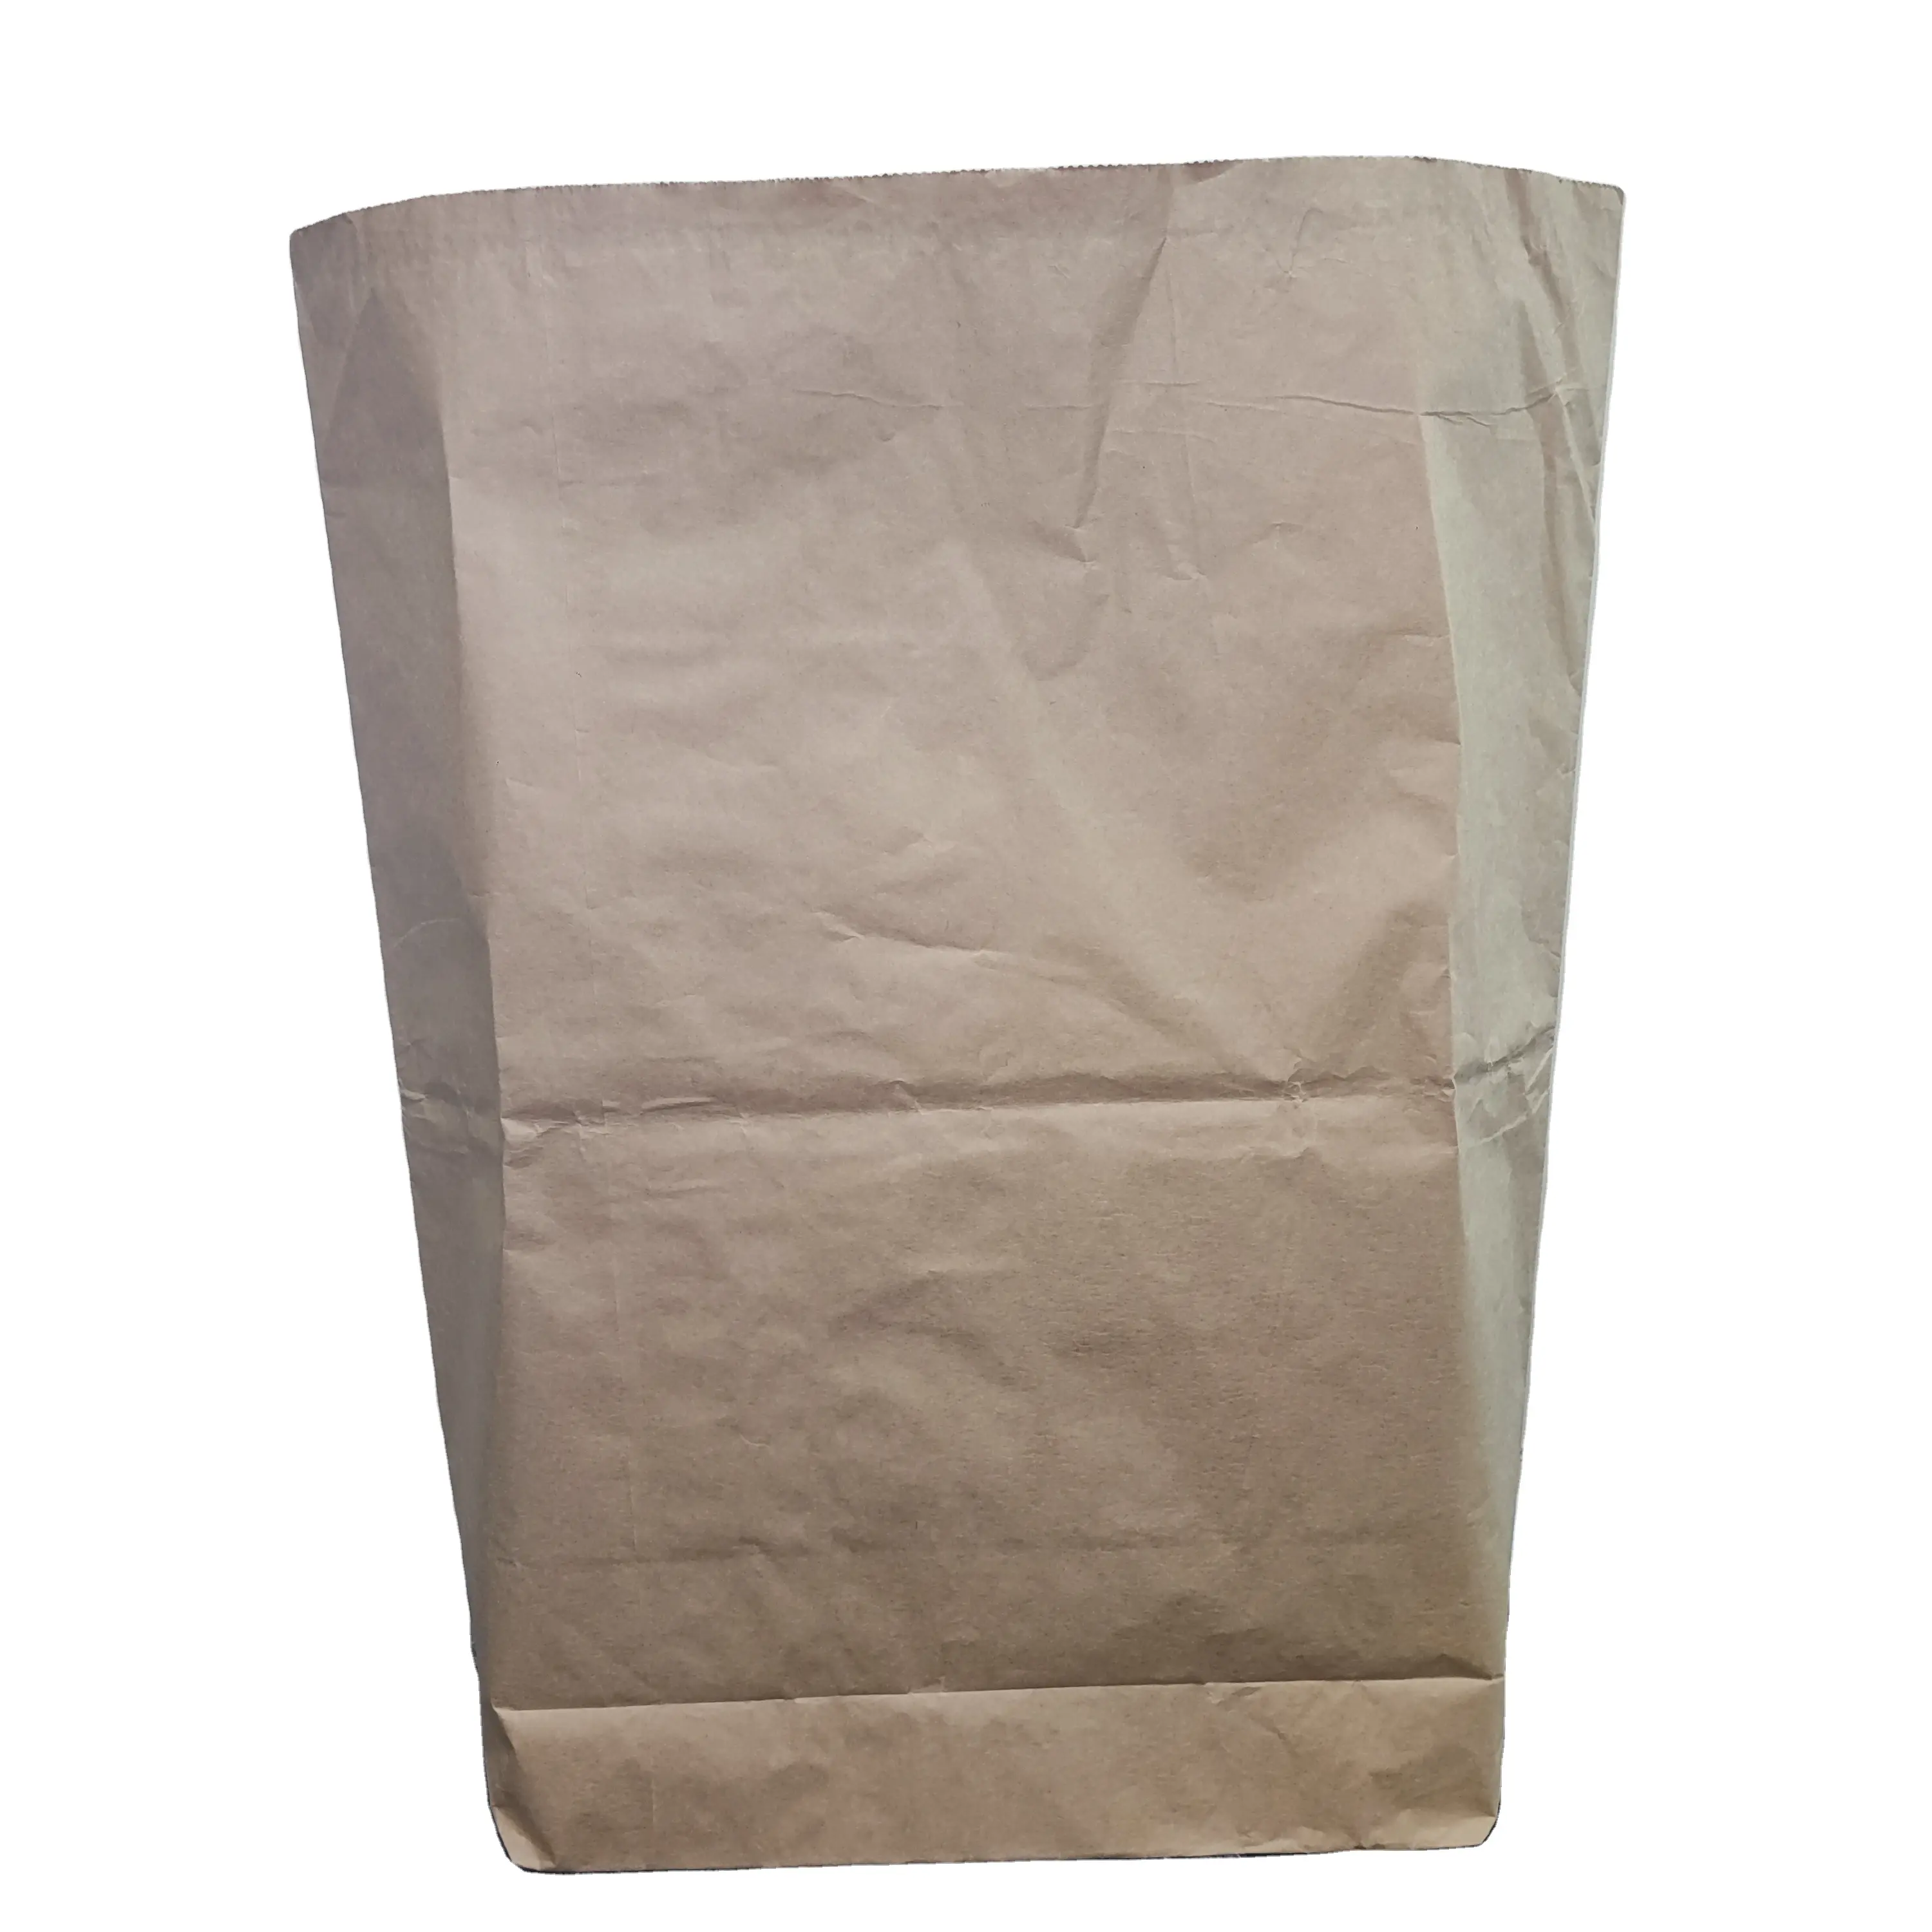 Wholesale 25Kg Skim Corolac Full Cream Milk Powder Packaging Paper Bag For Steeping Tea Bag And Sugar